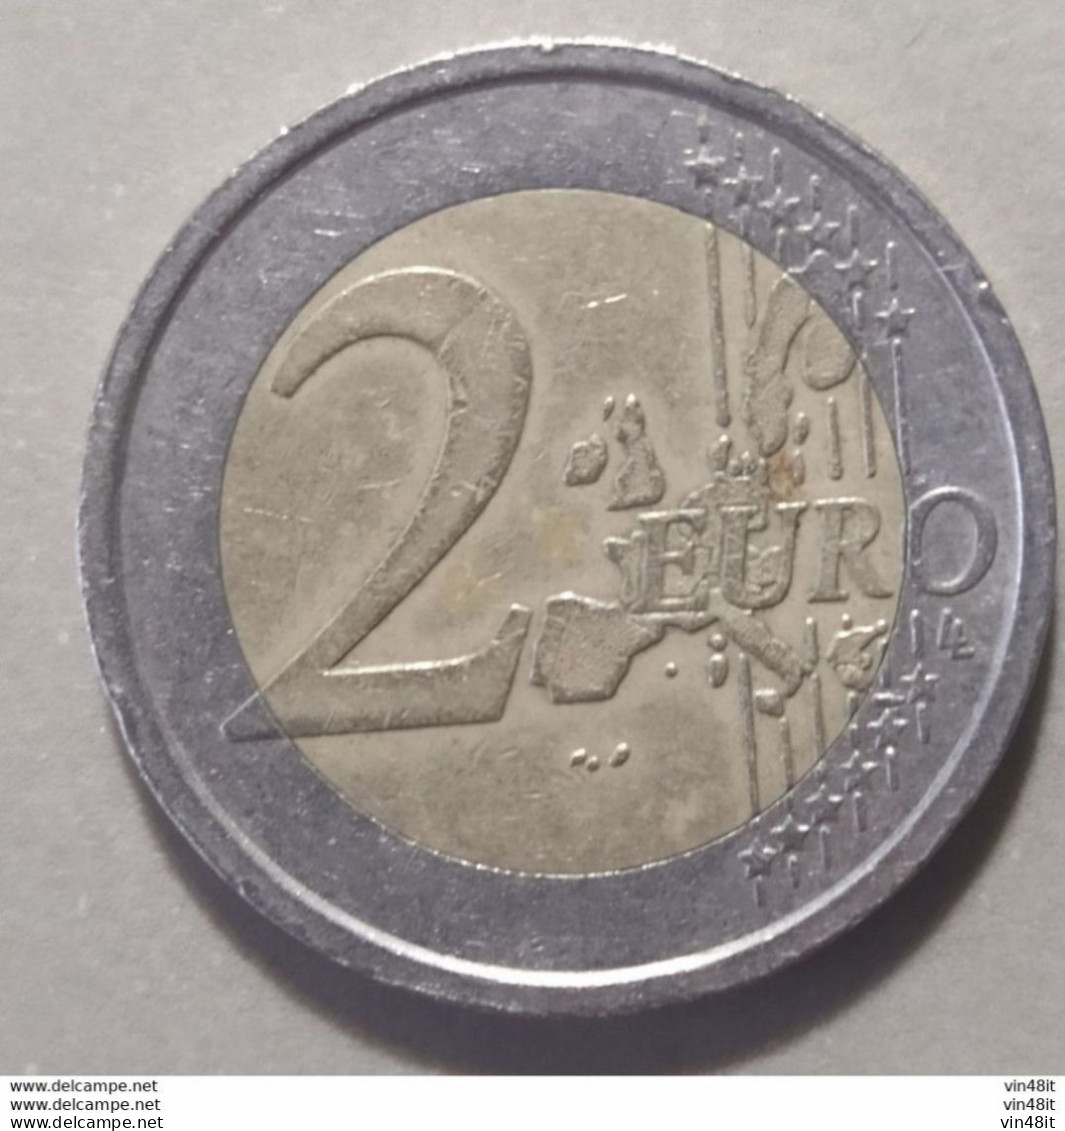 2002 -  GRECIA -  MONETA IN EURO - (COMMEMORATIVA)   DEL VALORE DI  2,00  EURO  - USATA - Cipro